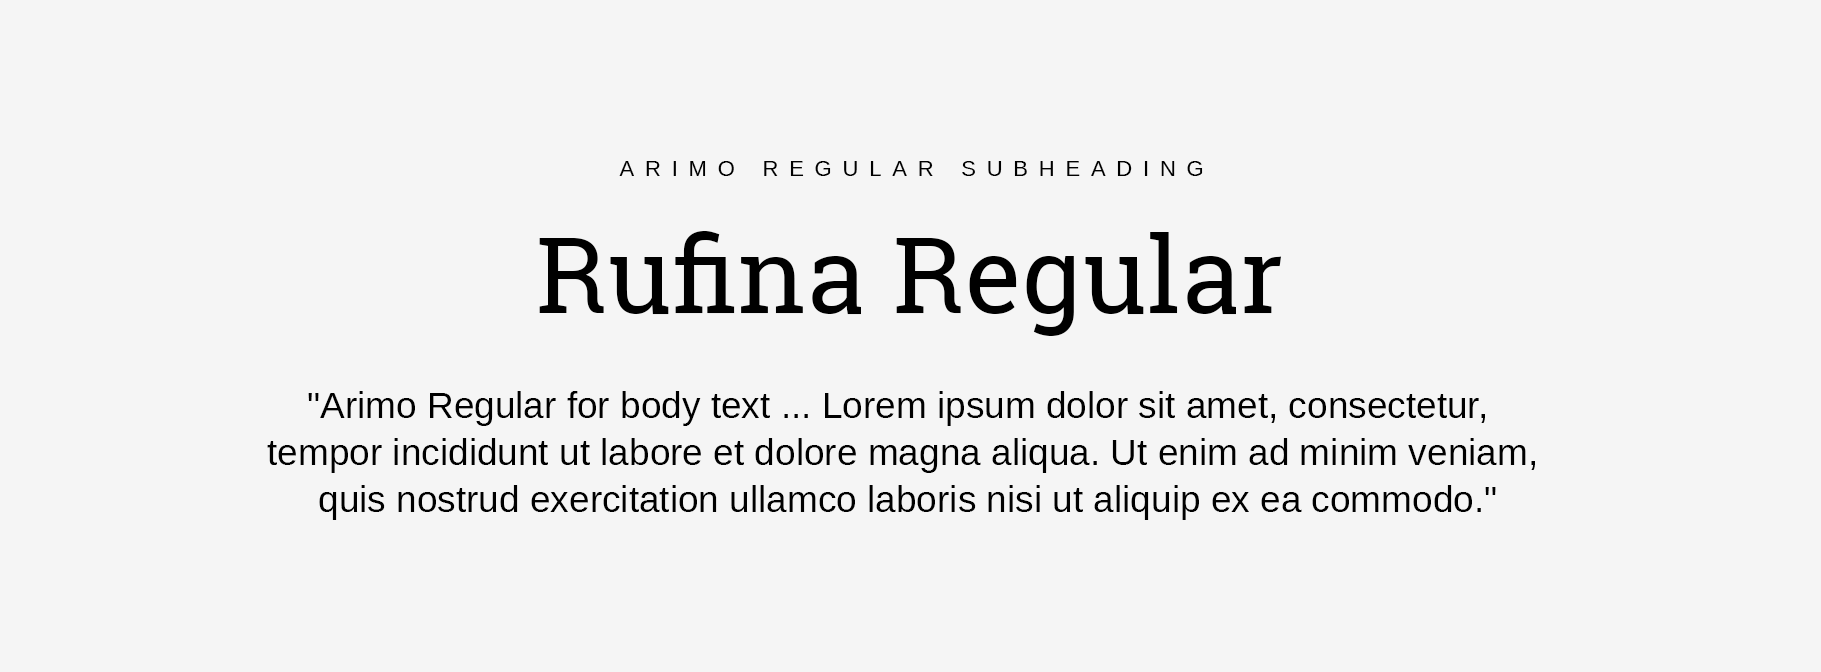 Arimon Regular and Rufina Regular font pairings